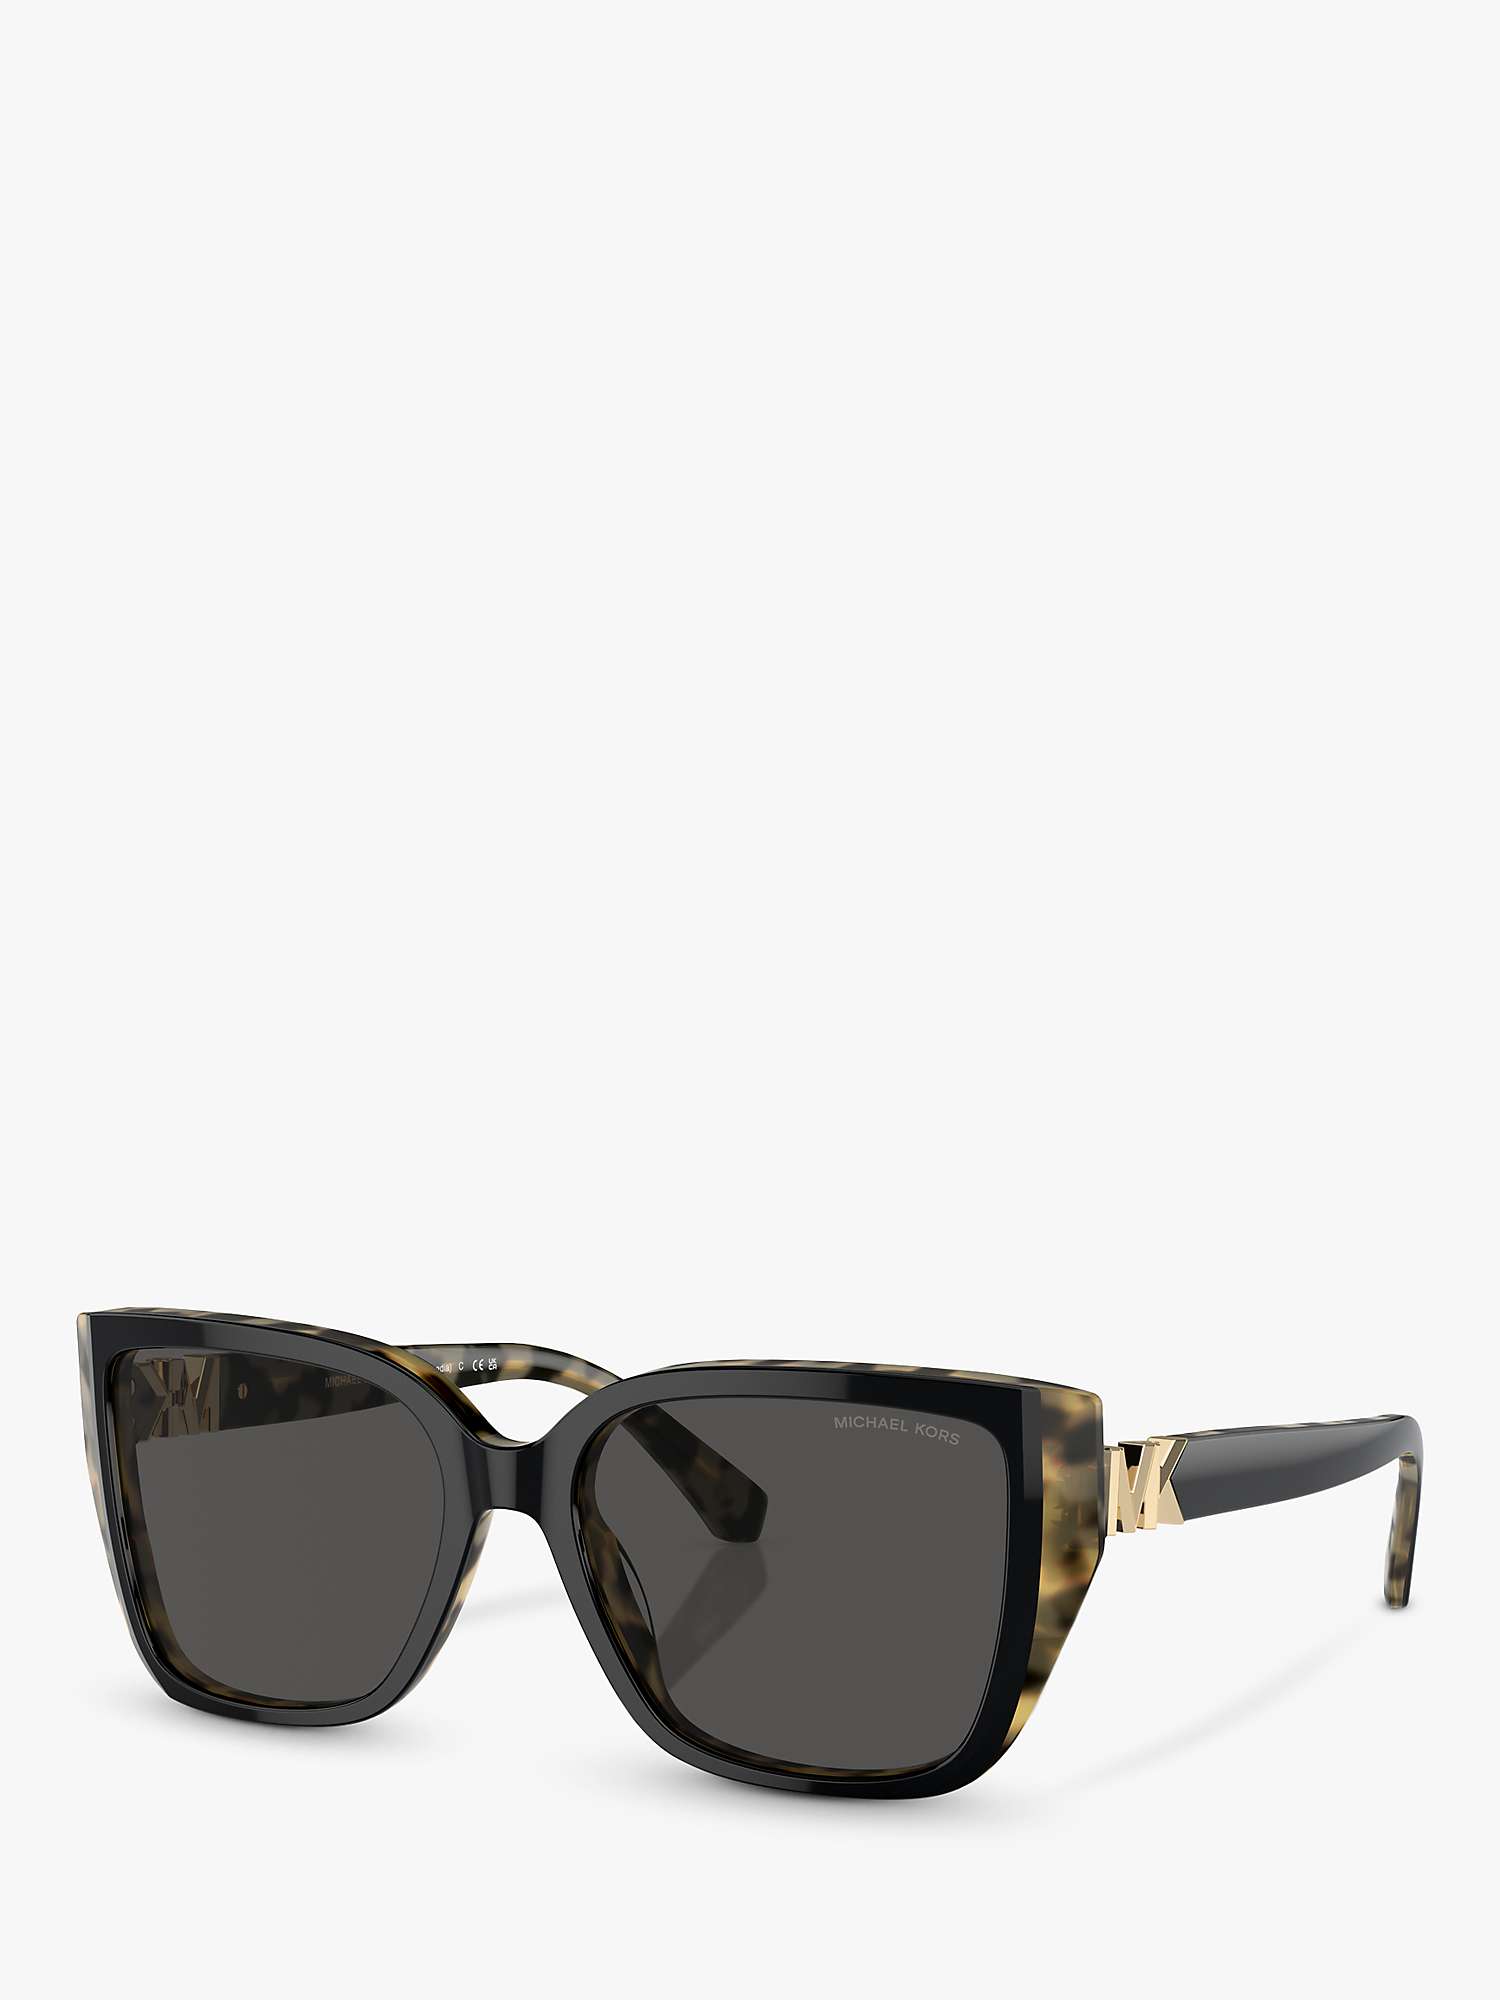 Buy Michael Kors MK2199 Women's Acadia D-Frame Sunglasses, Black on Amber Tortoise/Grey Online at johnlewis.com